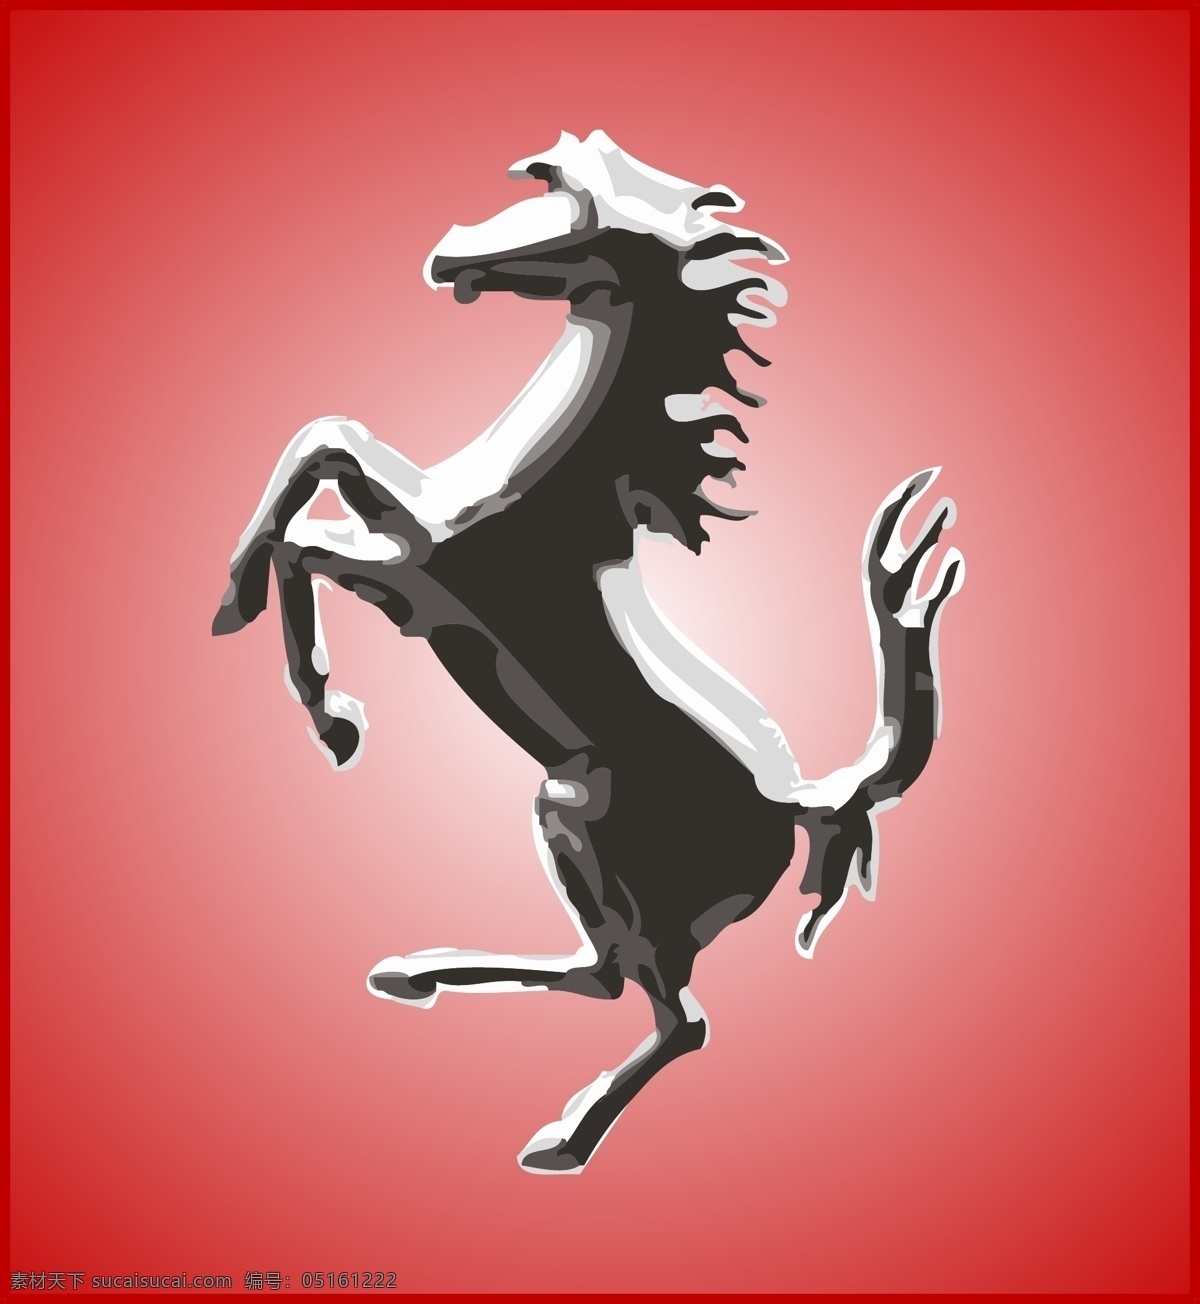 法拉利 标志 标识为免费 psd源文件 logo设计